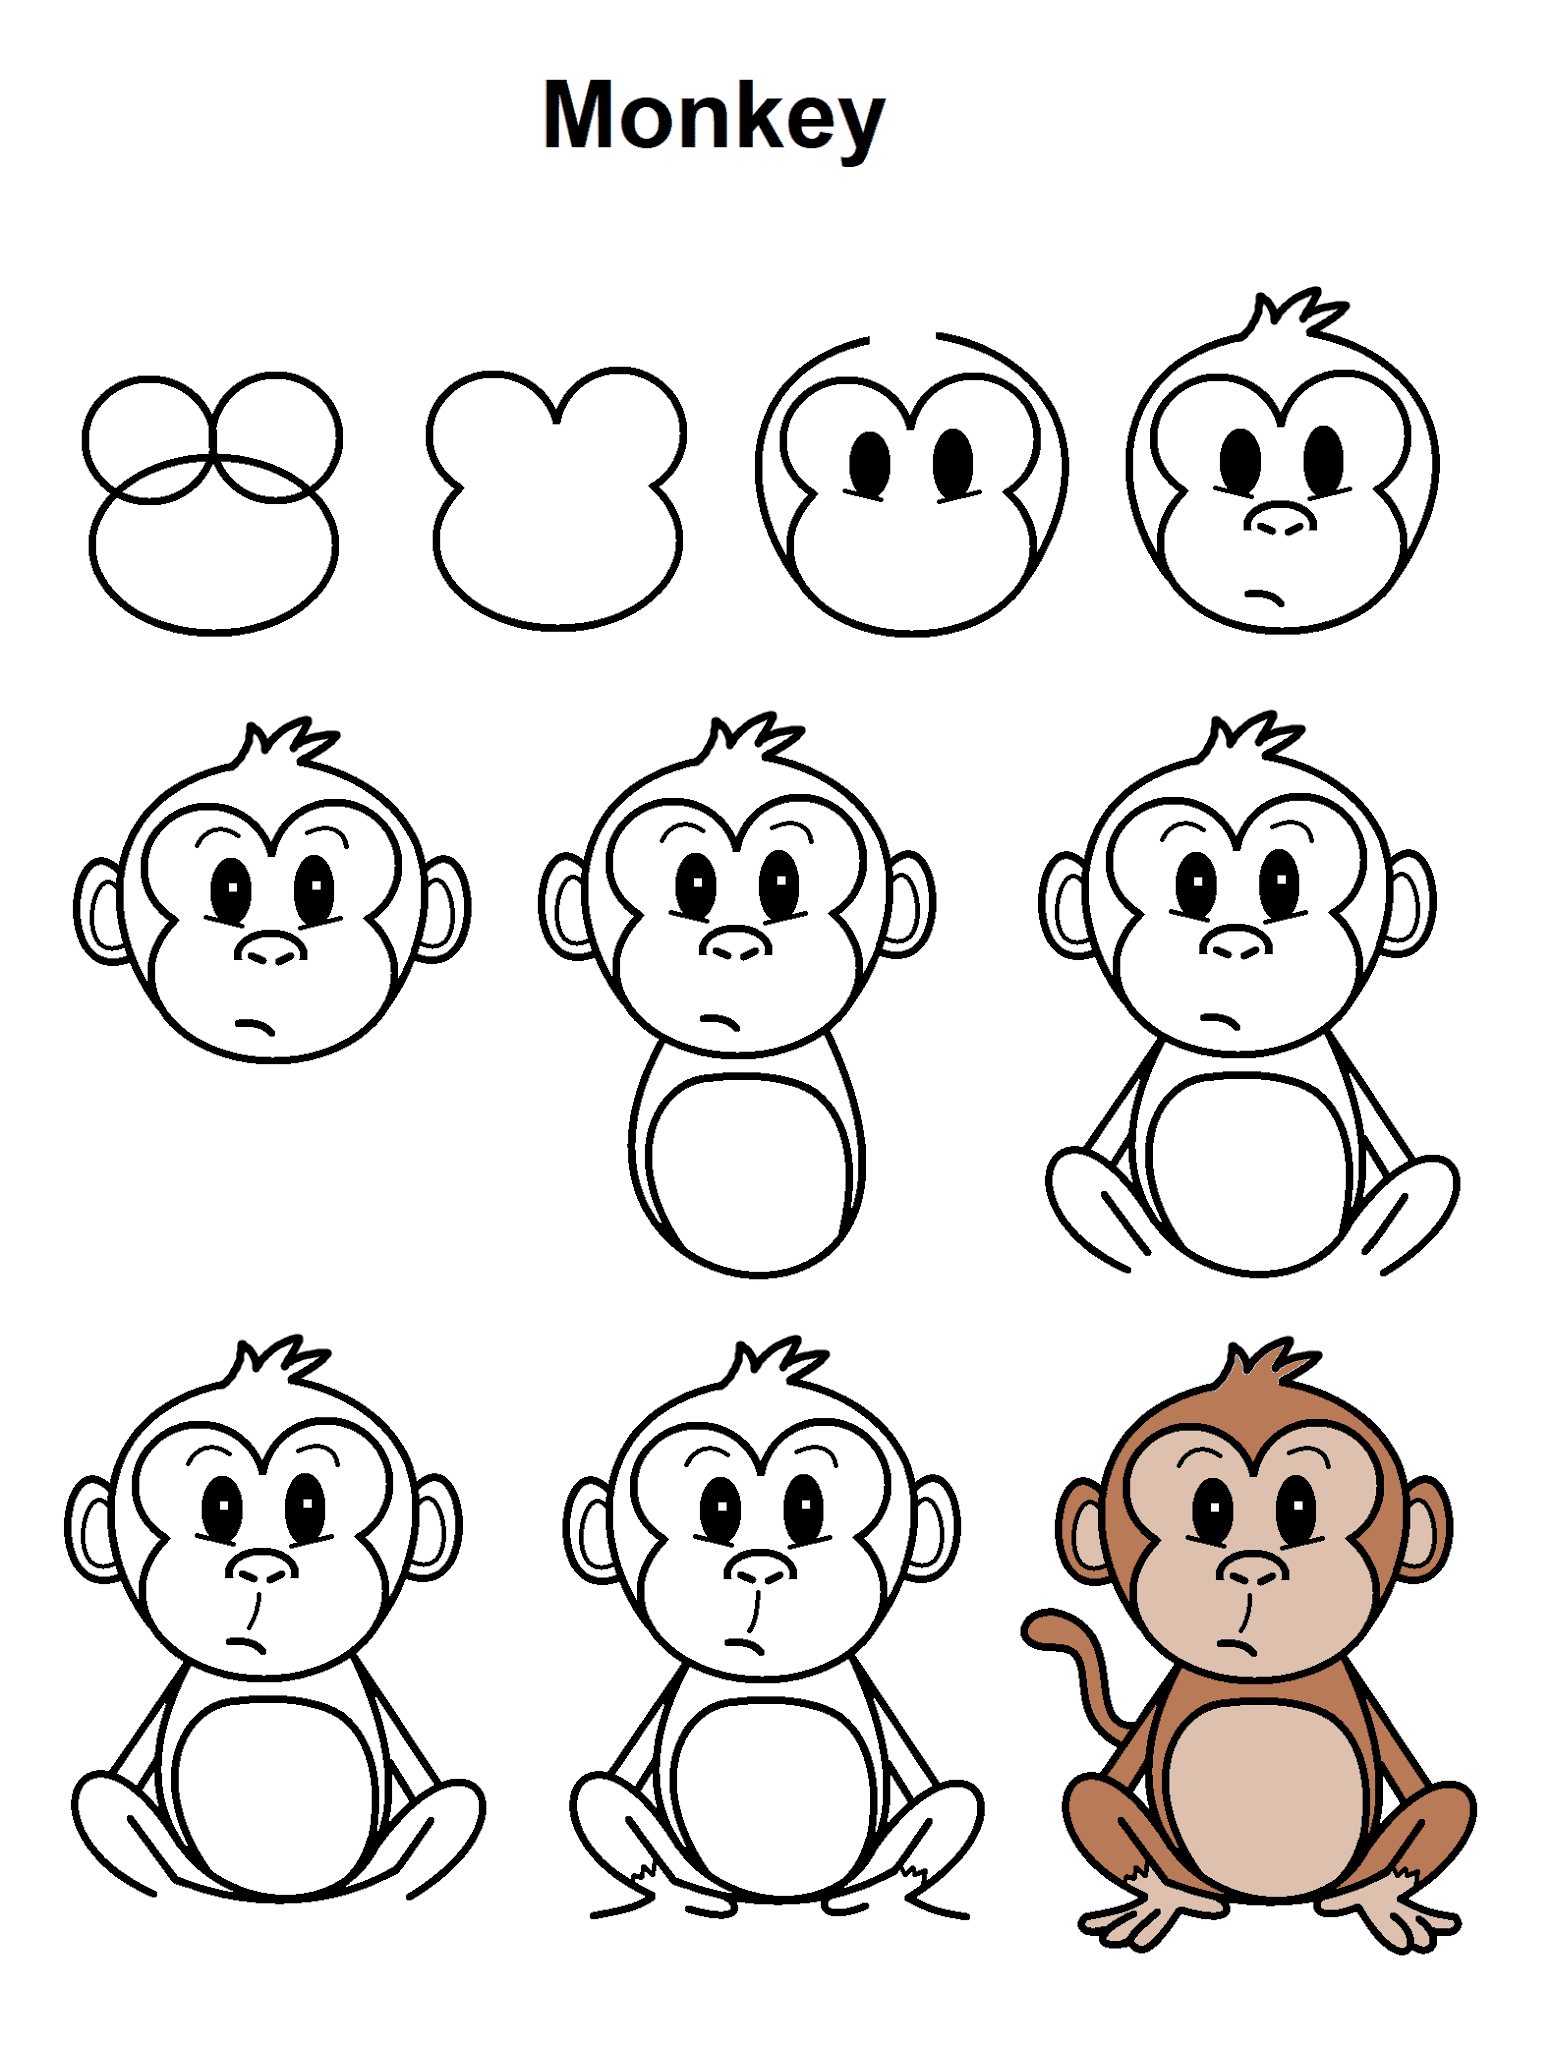 Como desenhar um macaco subindo em uma árvore - Guias fáceis de desenho  passo a passo - Howtos de desenho